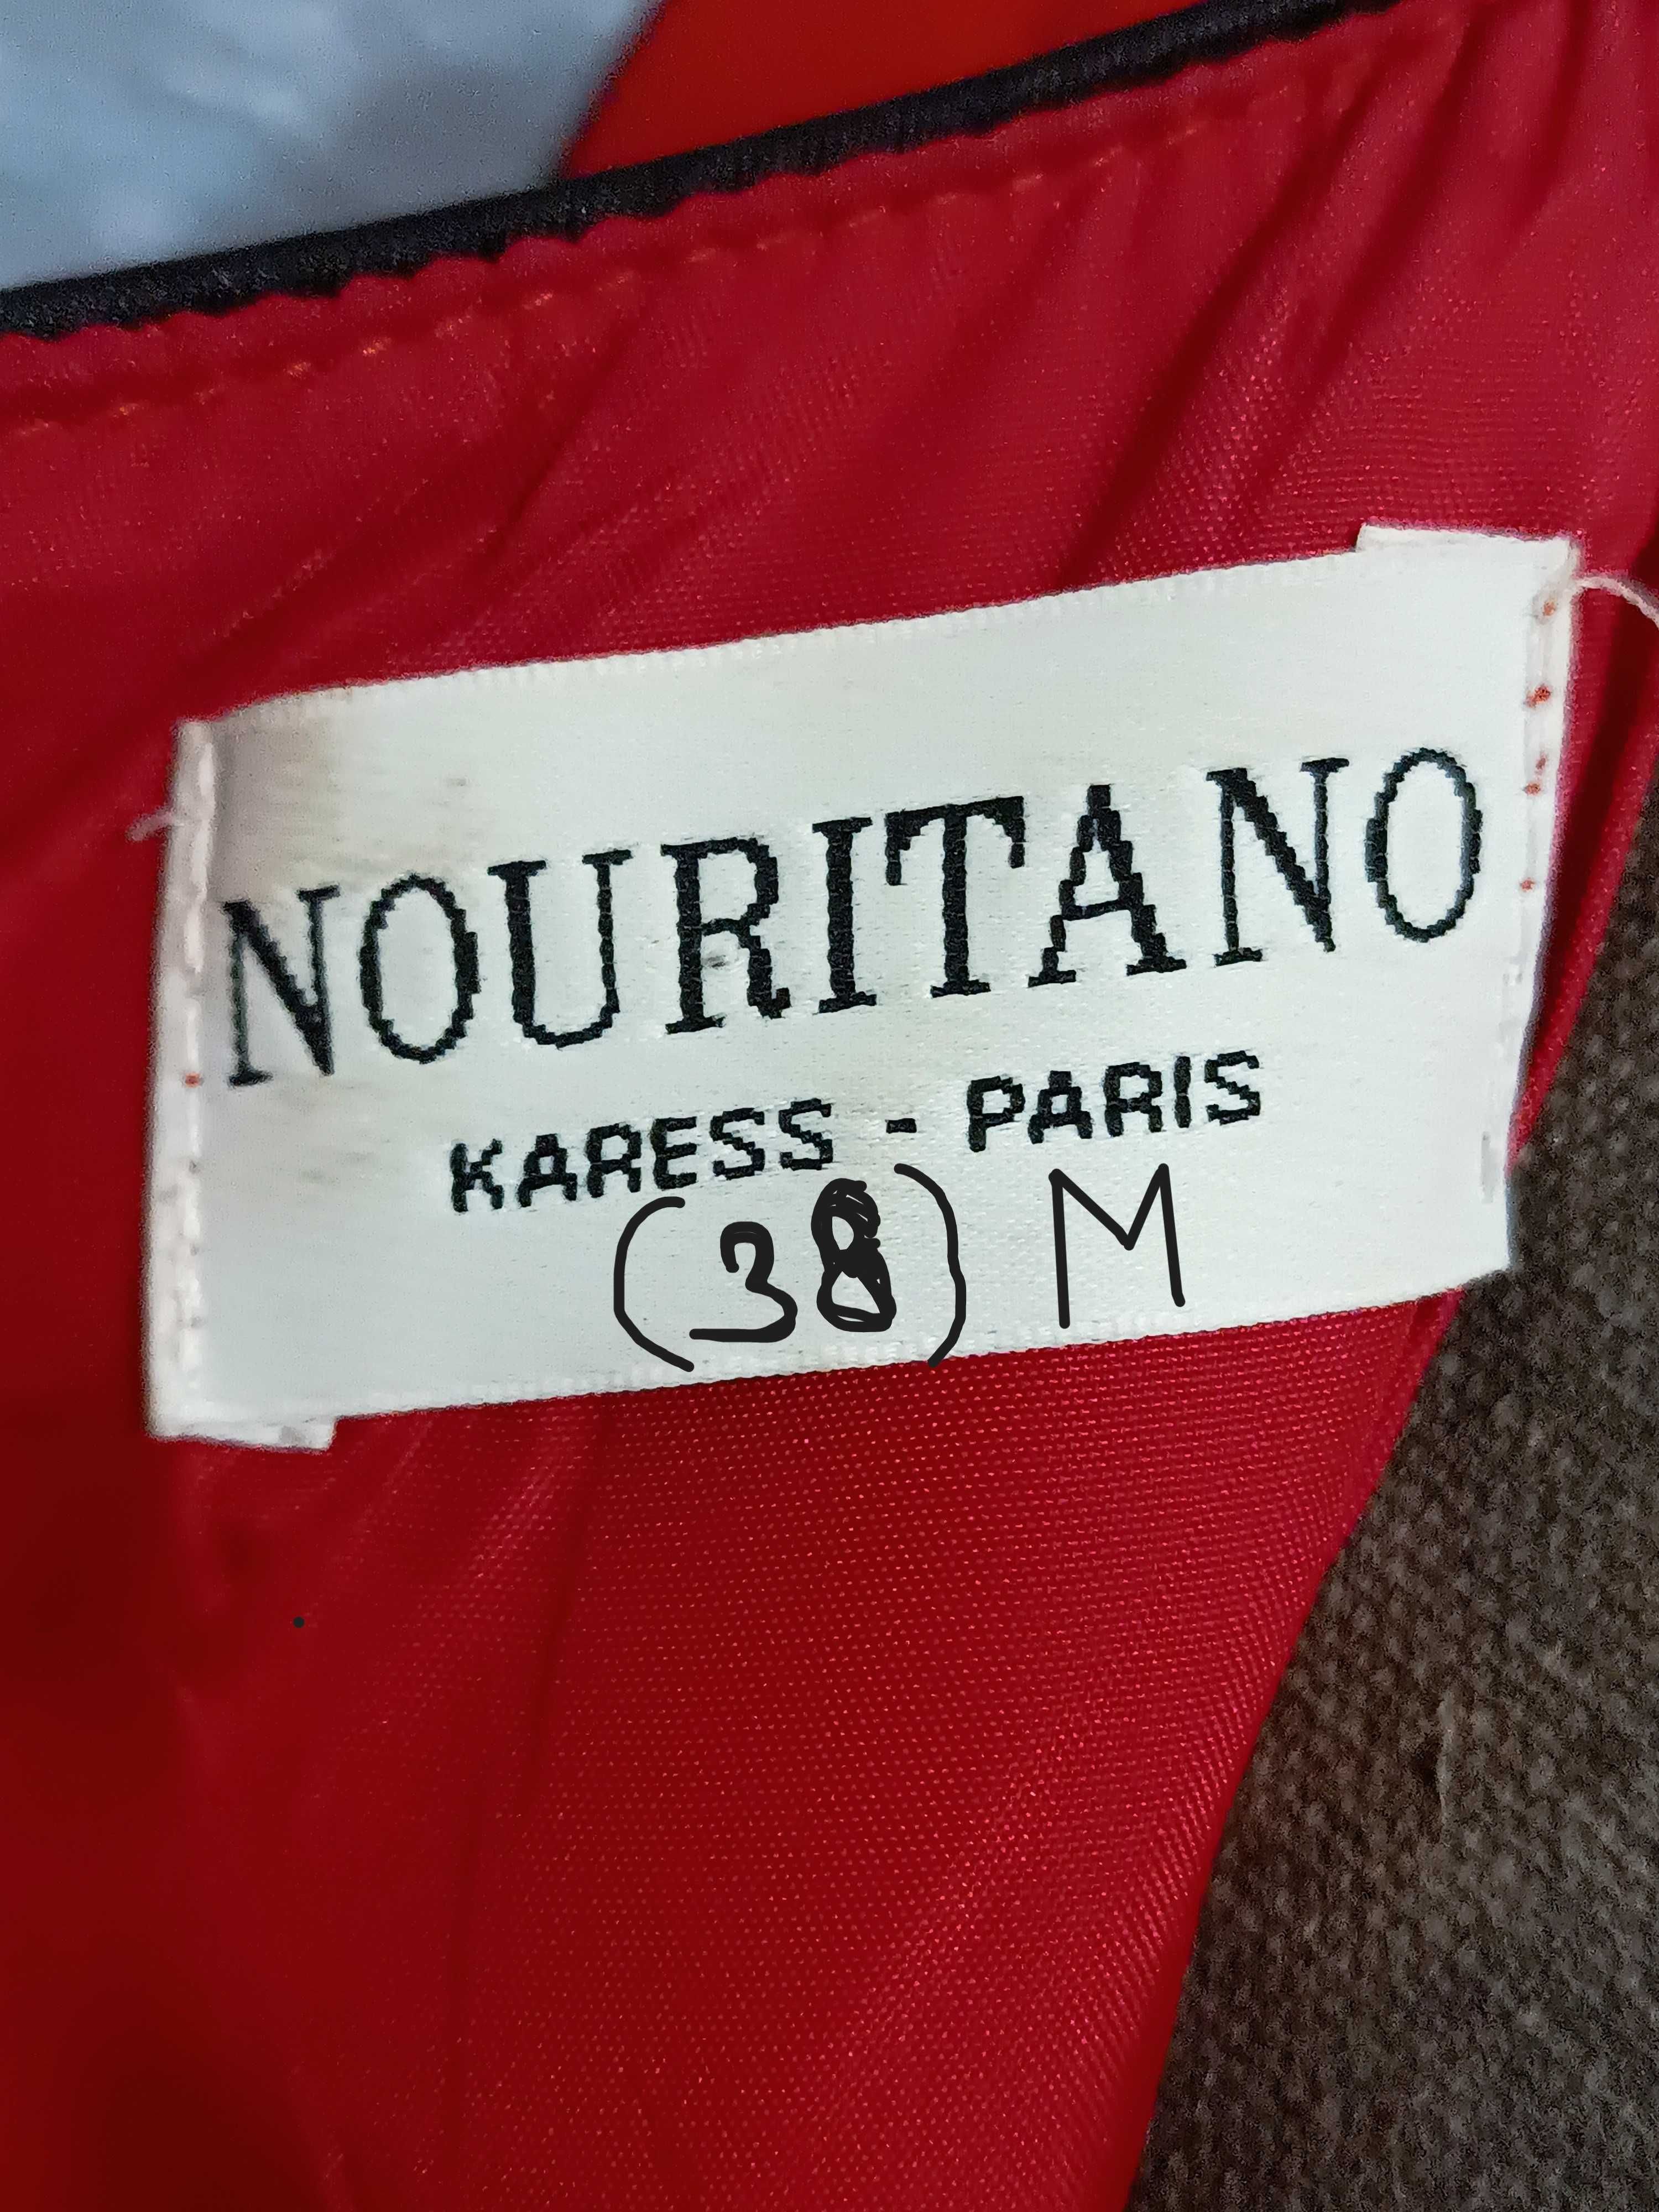 Vestido vermelho da Nouritano Paris